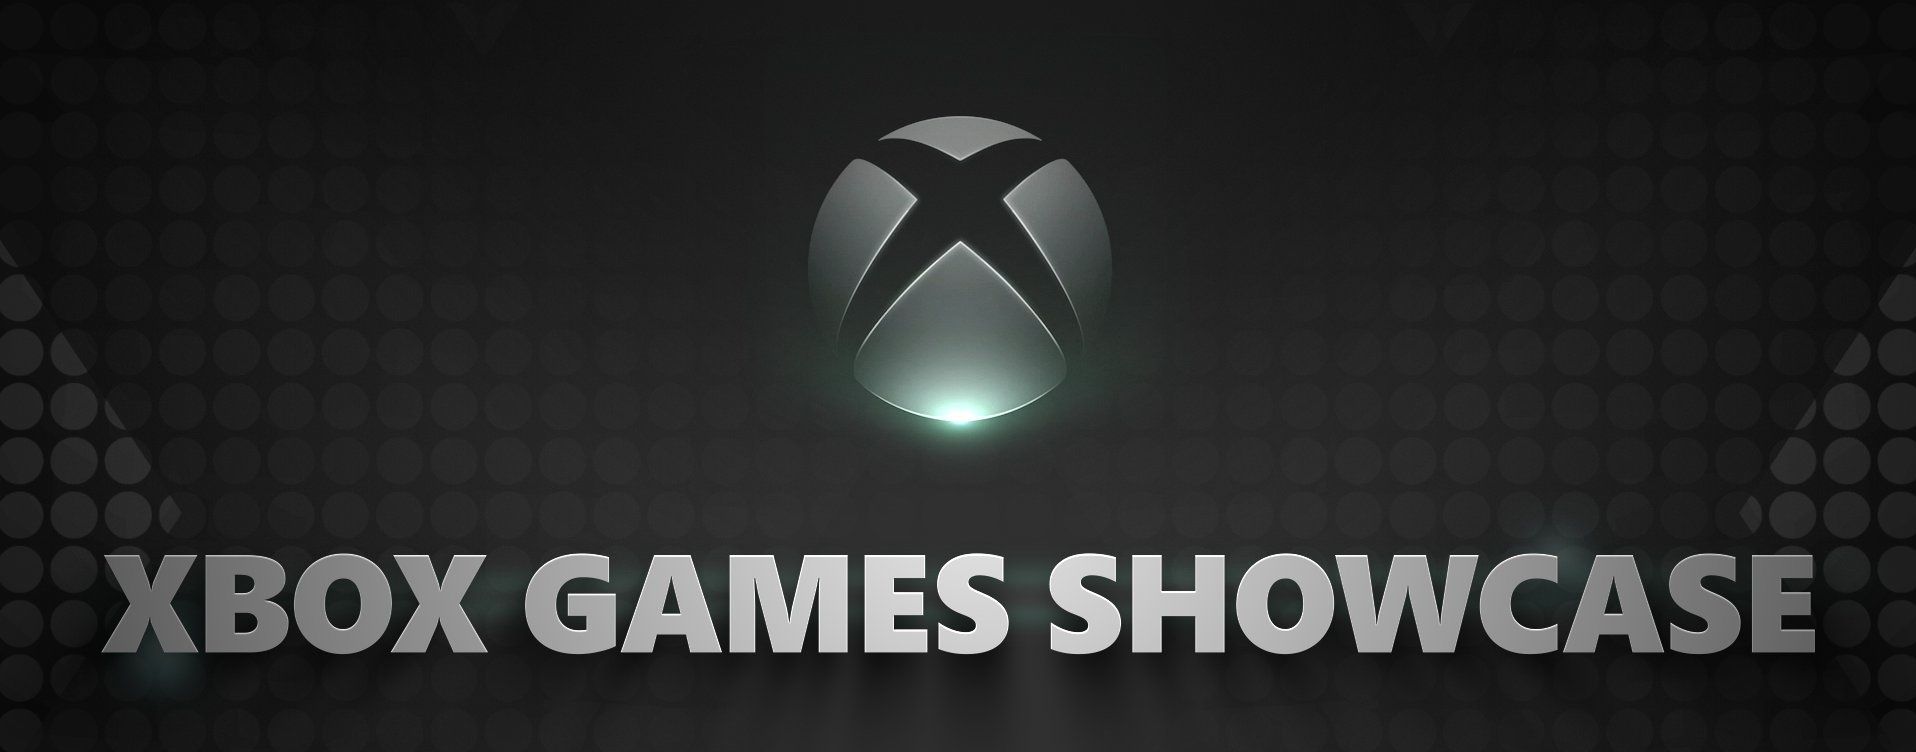 Grafika zapowiadajająca wydarzenie Xbox Games Showcase.